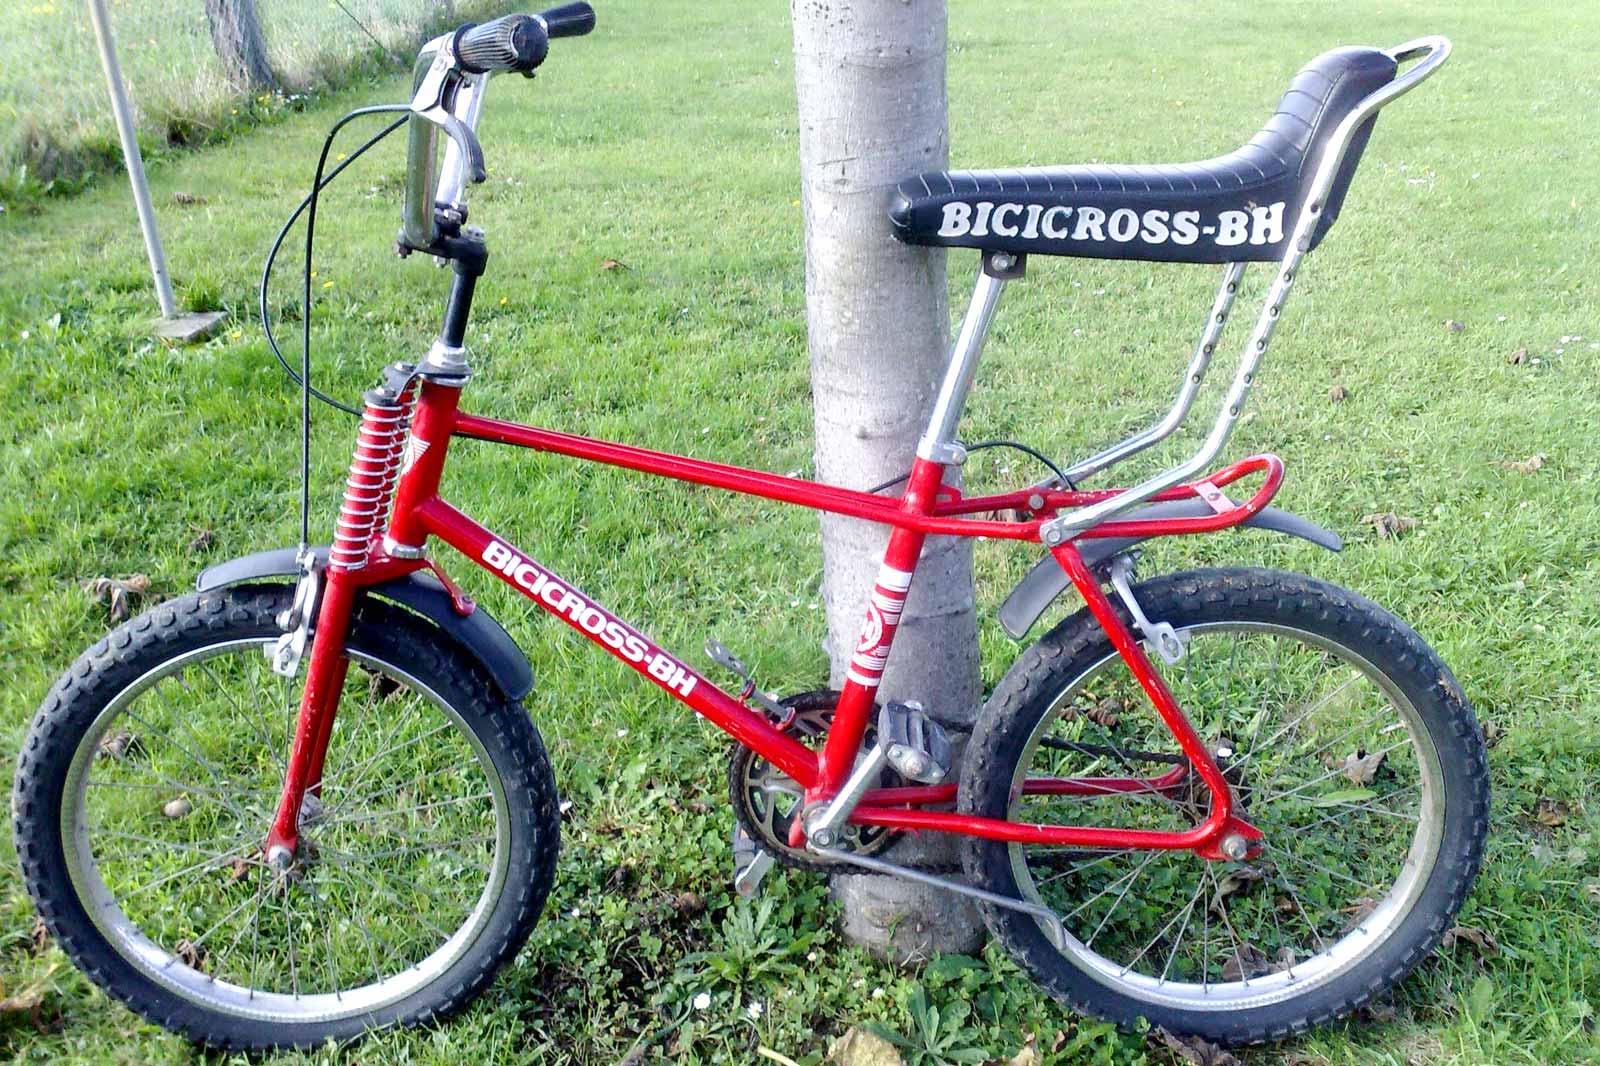 BH Bicicross